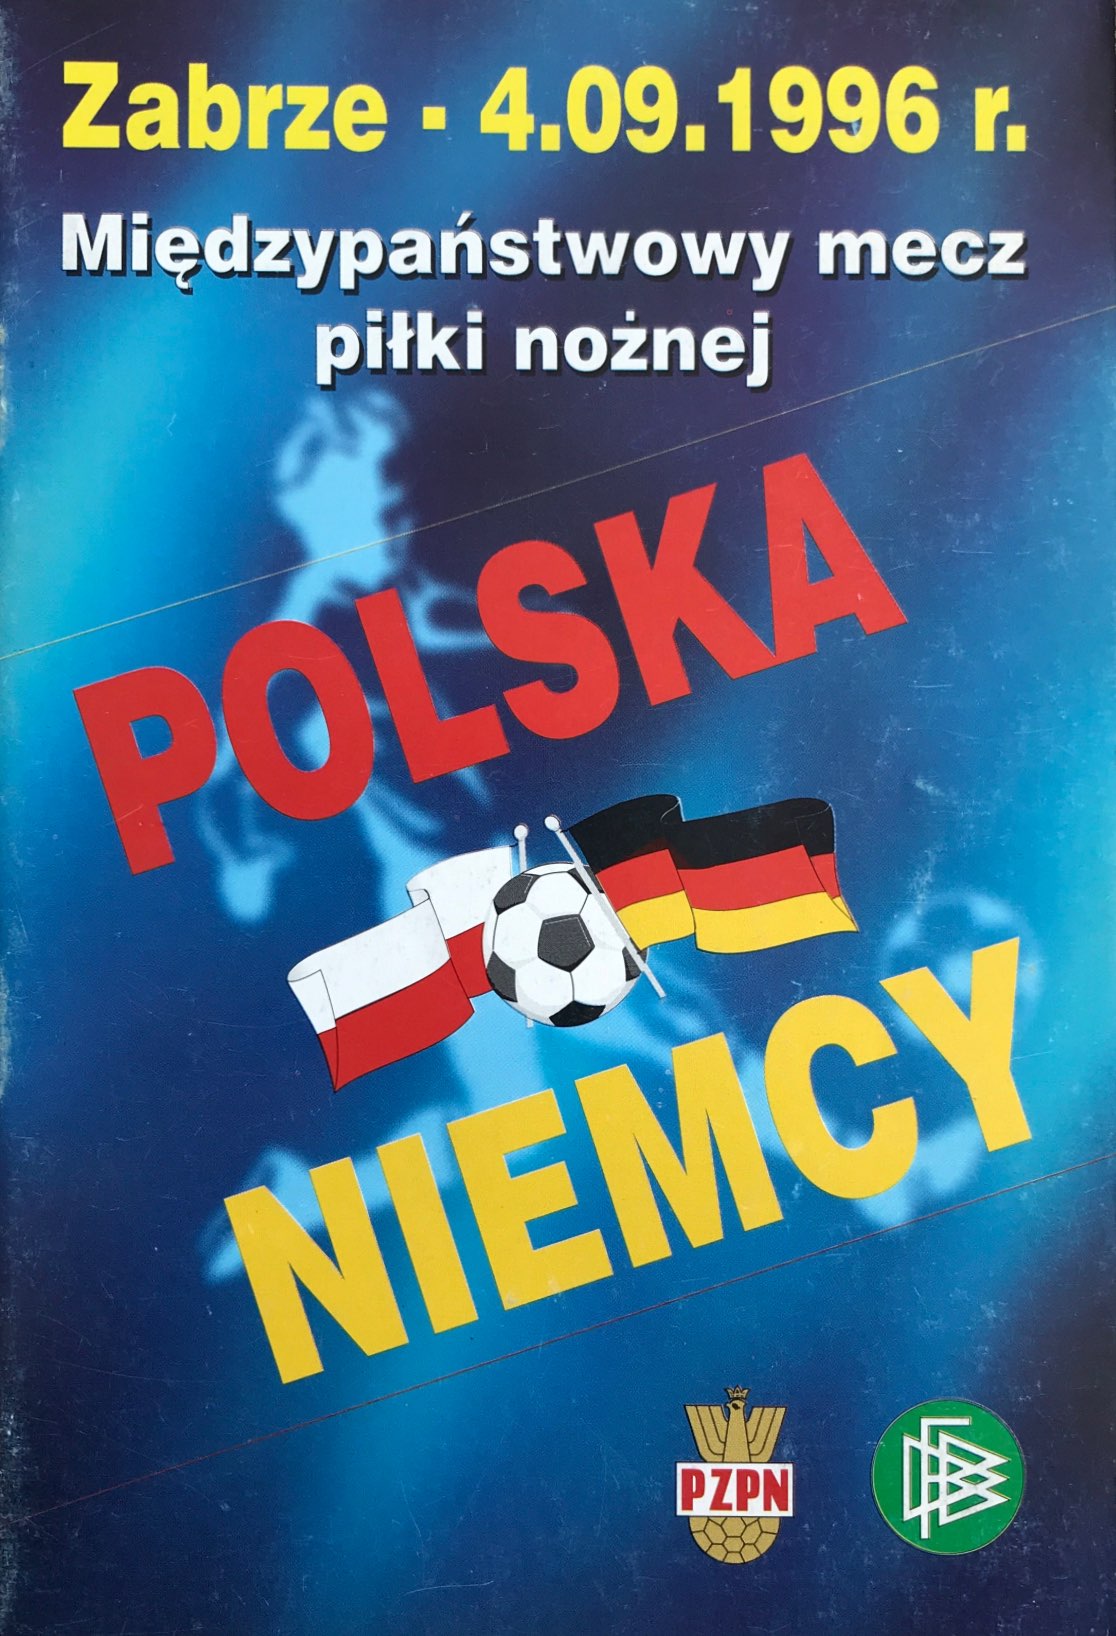 Program meczowy Polska - Niemcy 0:2 (04.09.1996).